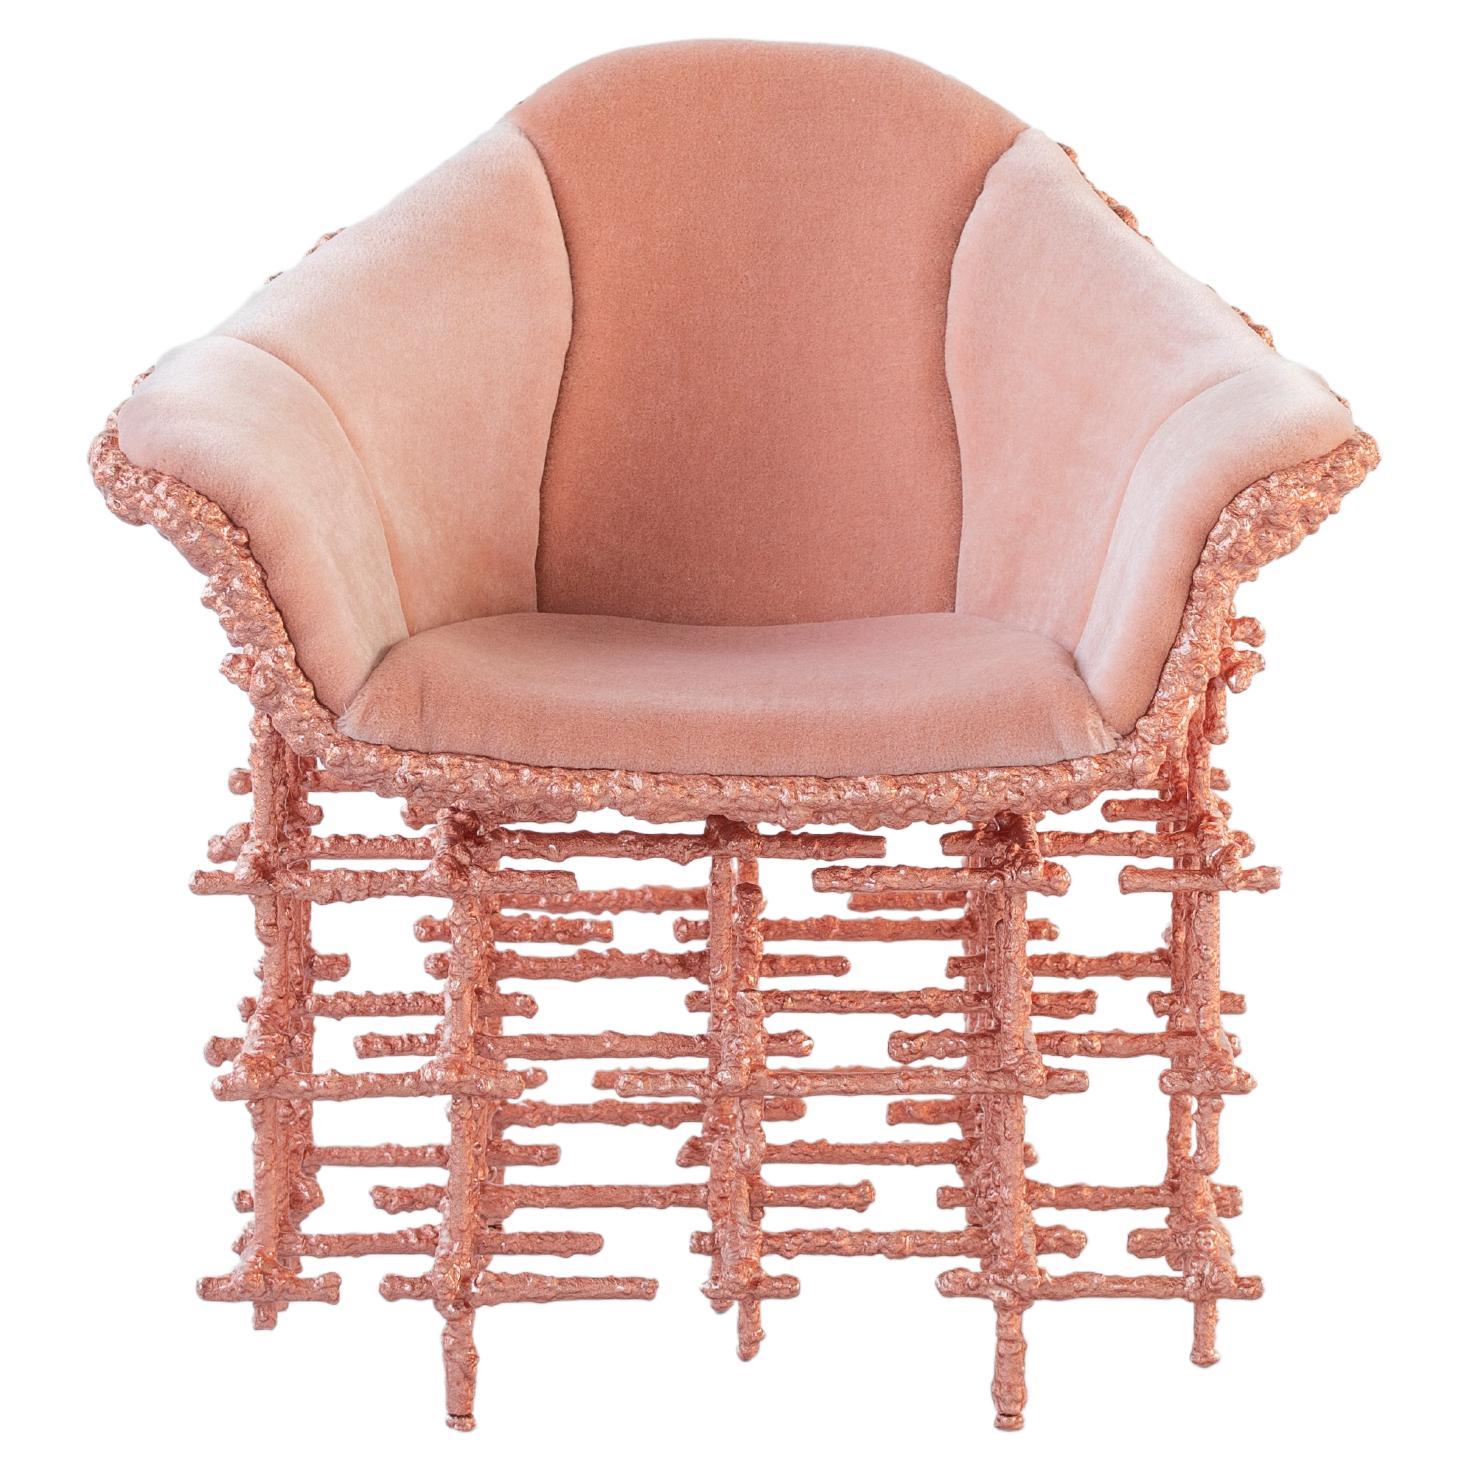 Chris Schanck, "Stuffed Shell Chair: Copper", 2021